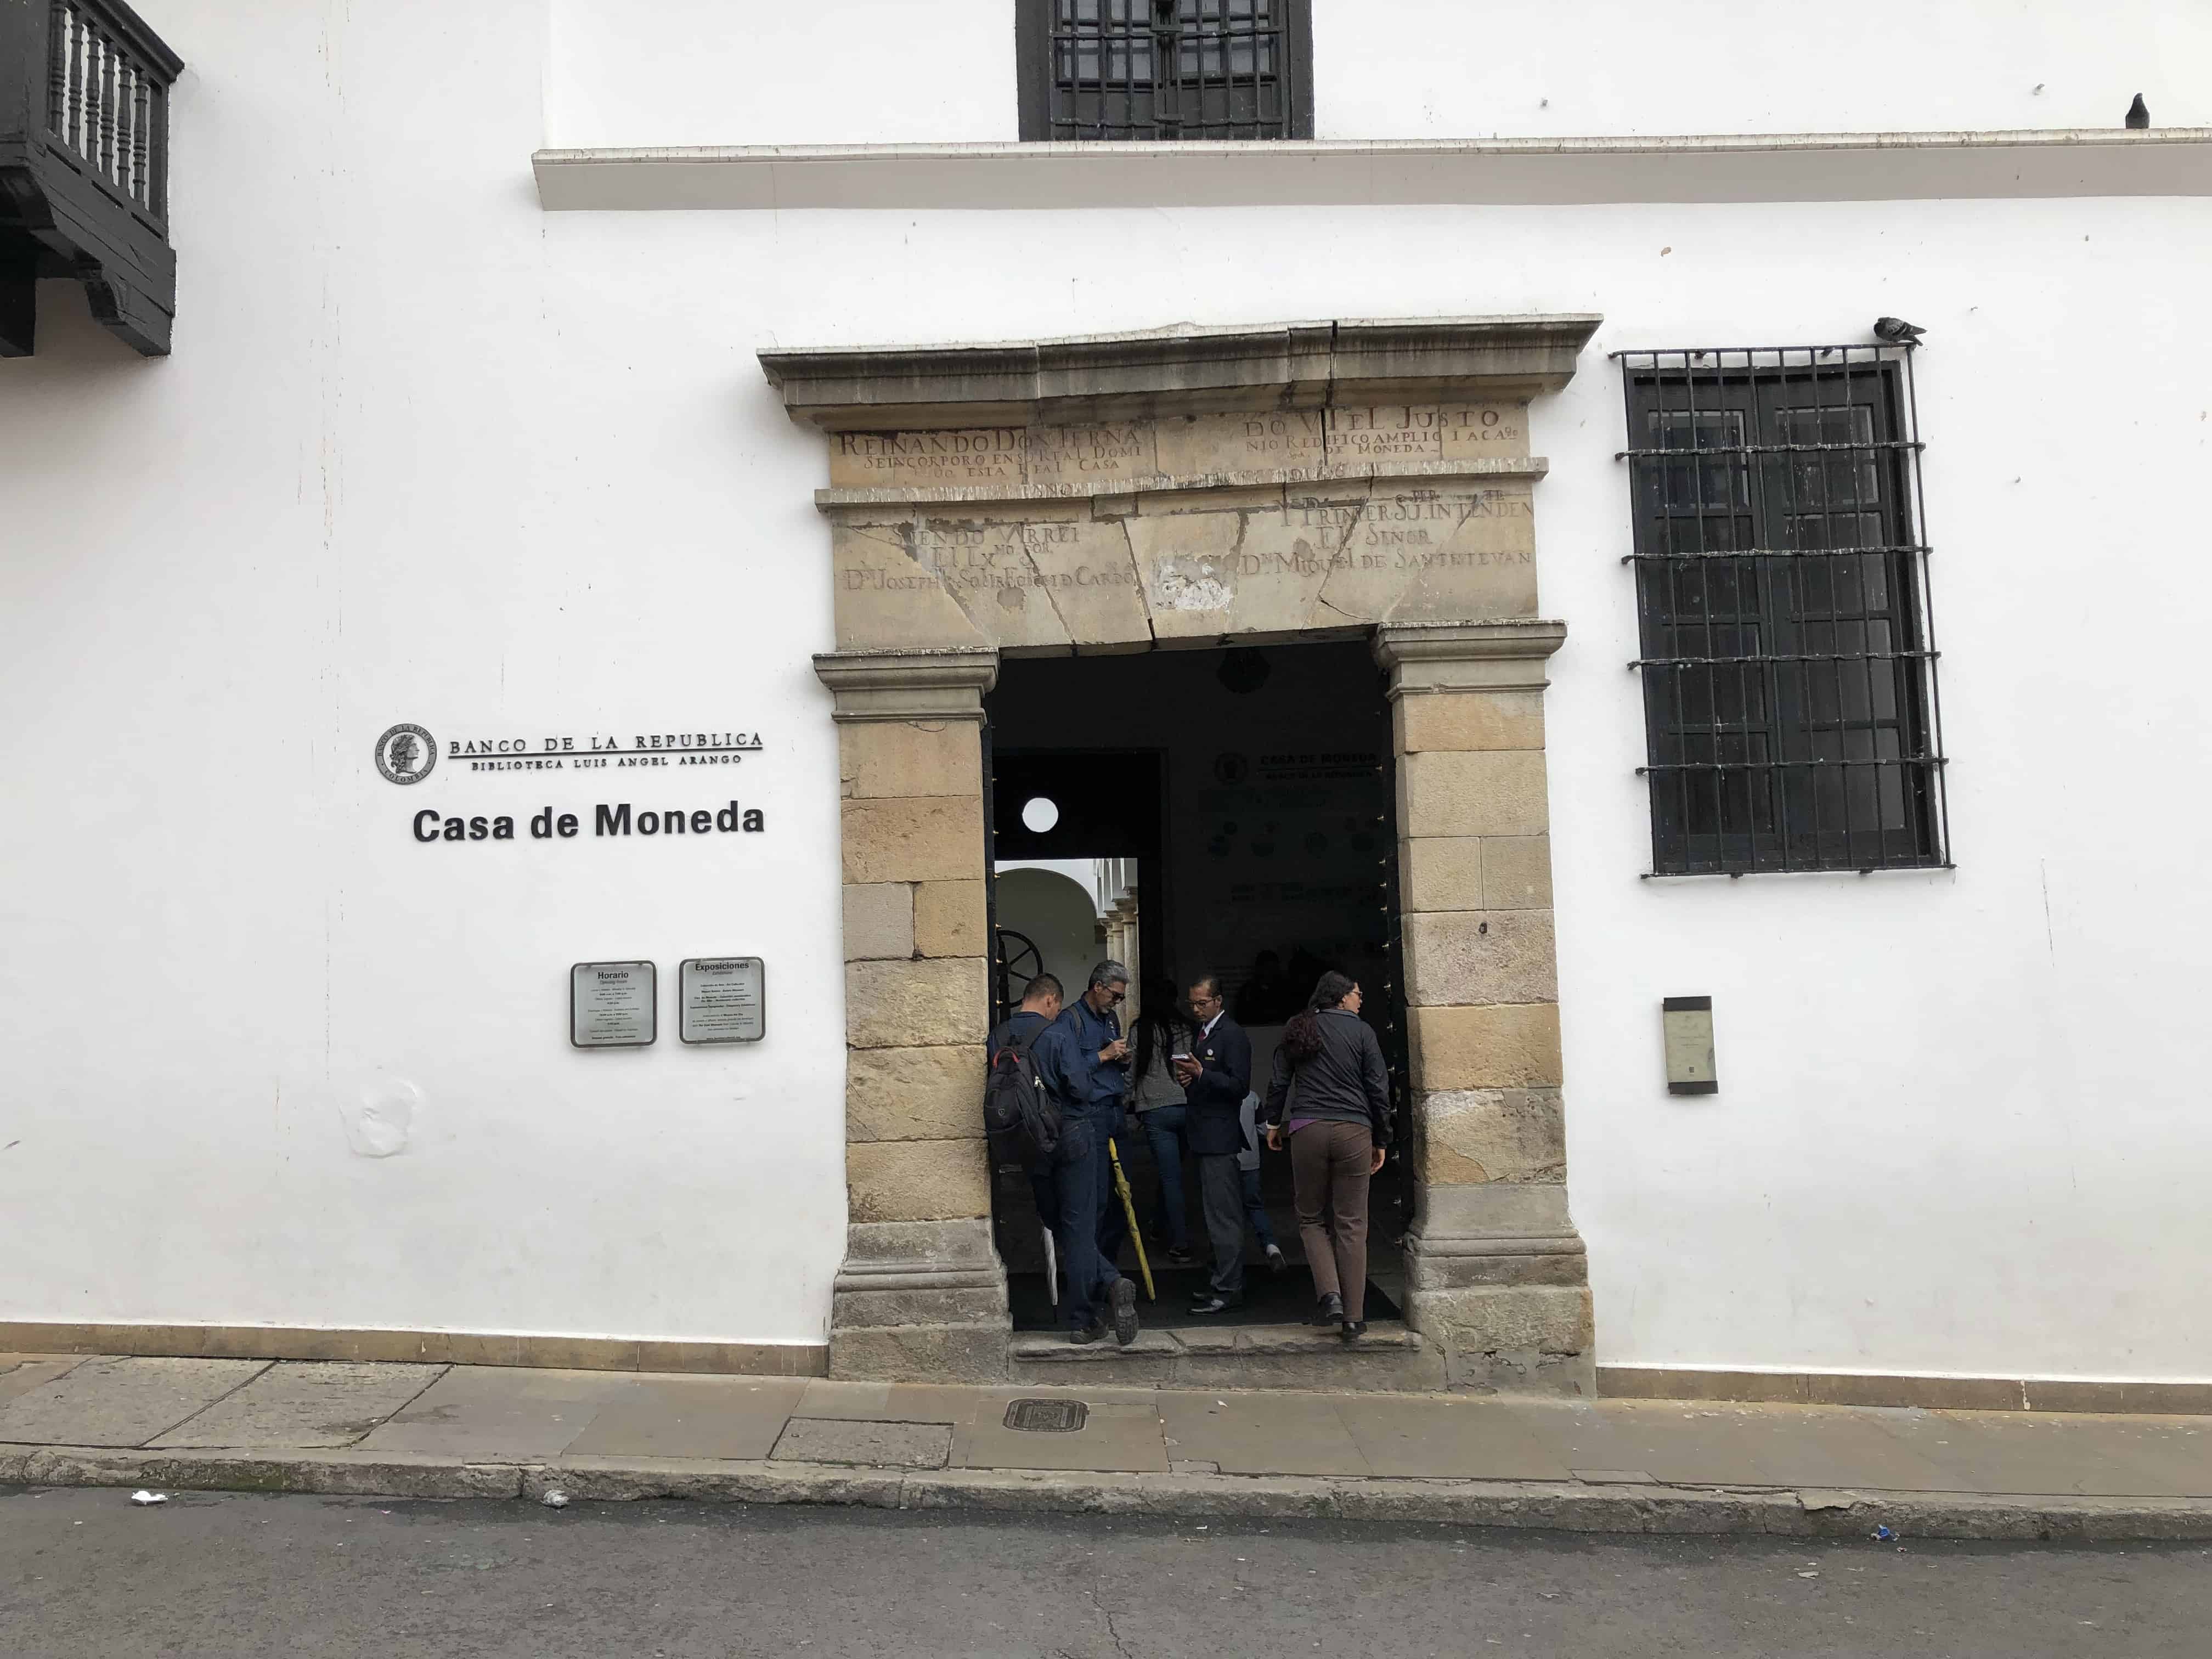 Entrance to the Casa de Moneda